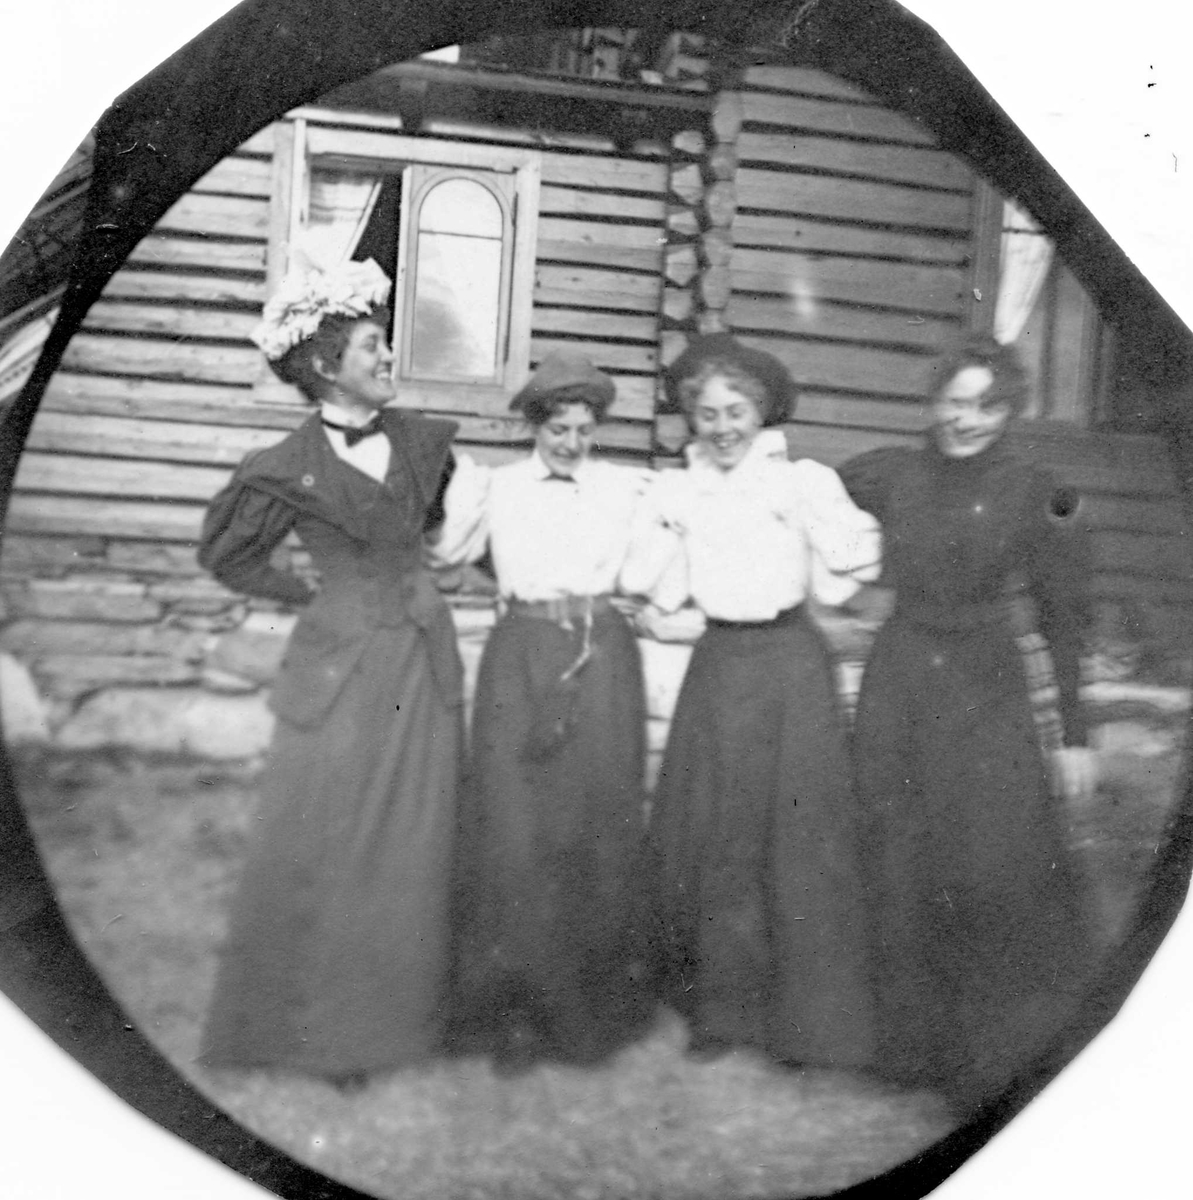 Golå, Sør-Fron, Oppland. Fire kvinner arm i arm foran tømmerhus, Golaa Sanatorium.